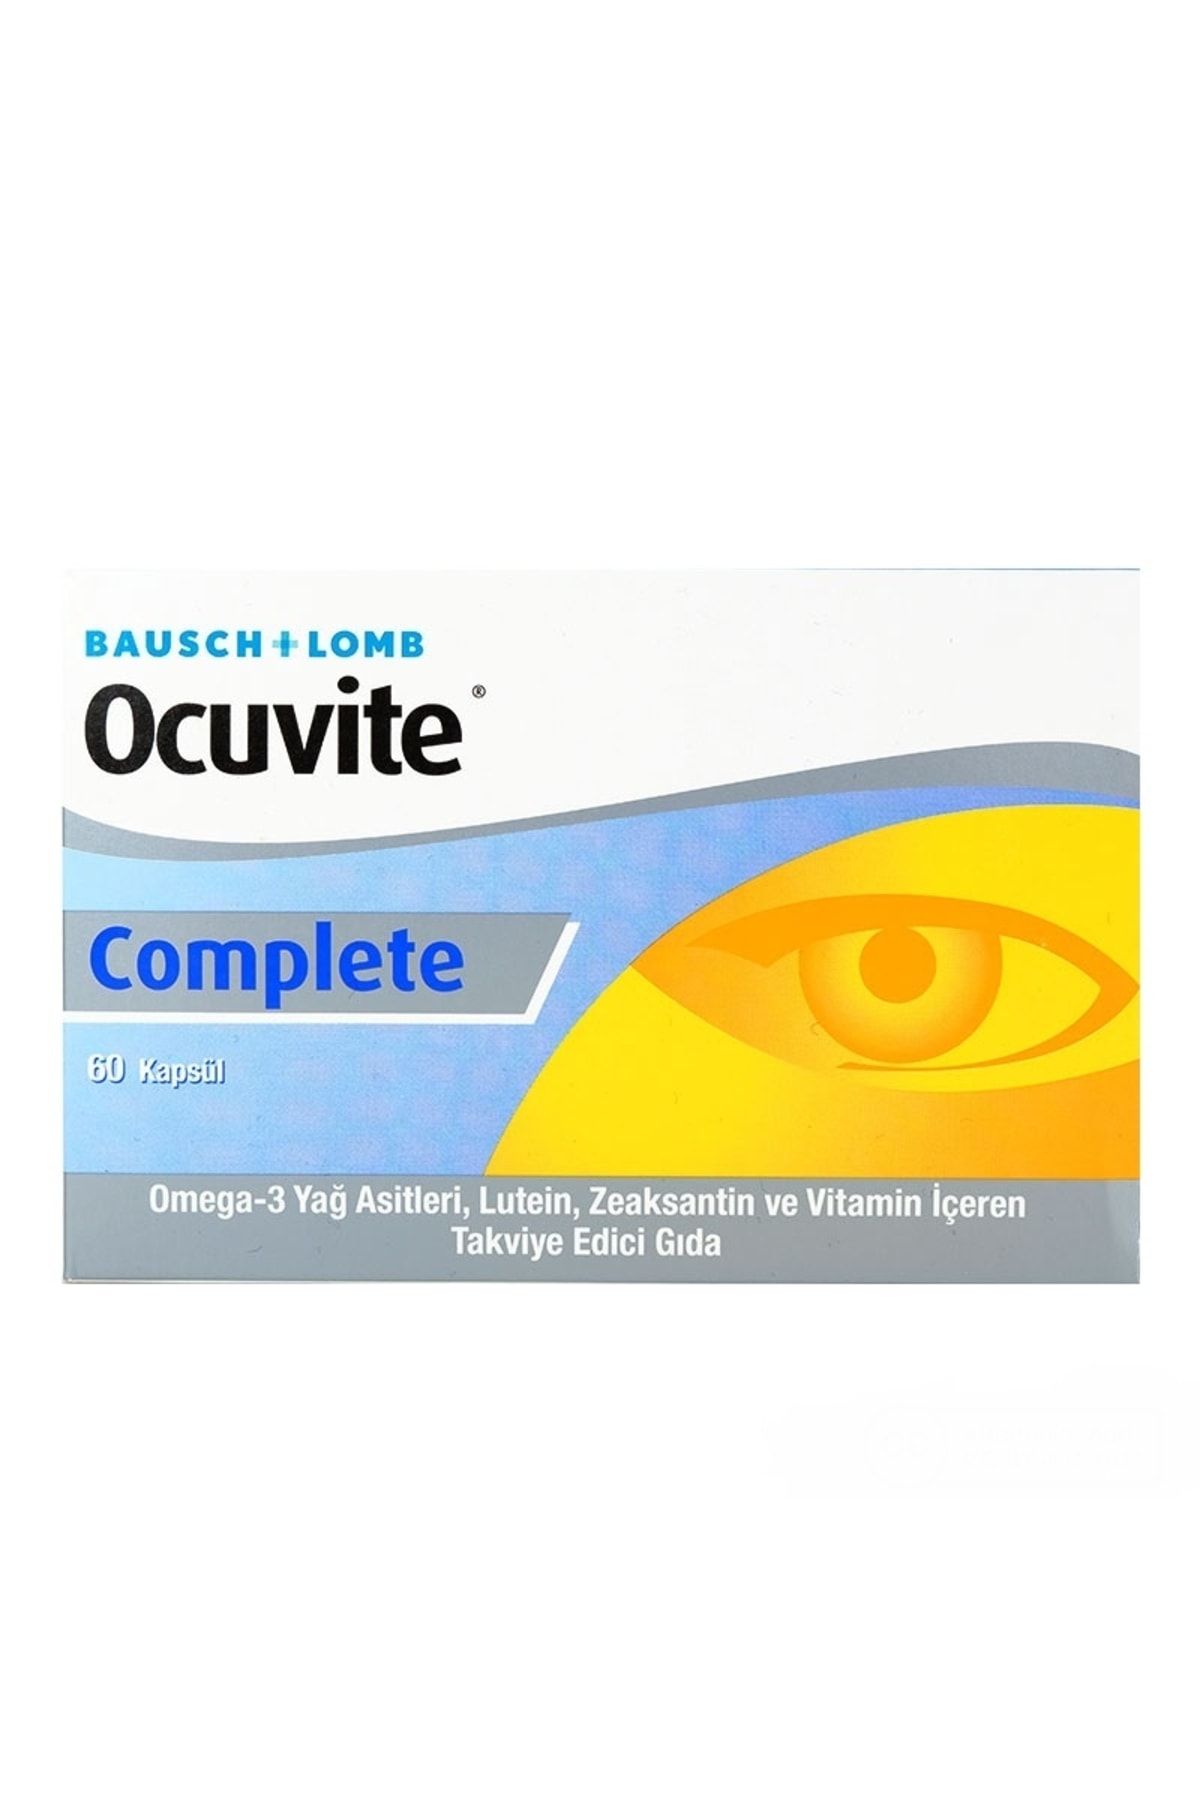 Ocuvite Complete 60 Kapsül vitamin